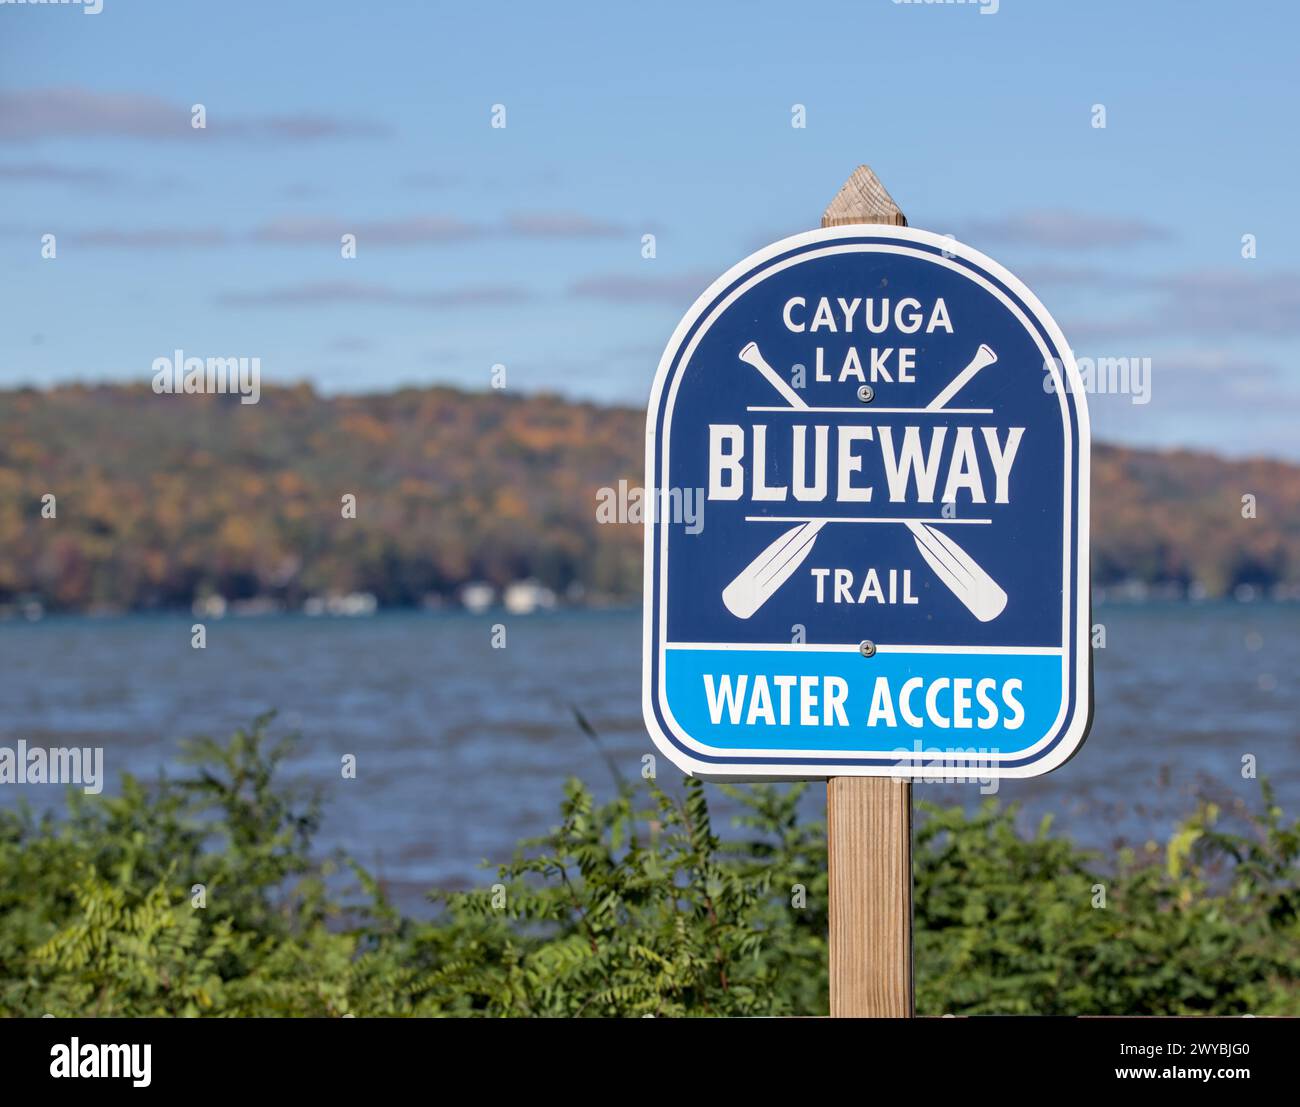 lago cayuga blueway trail insegna di accesso all'acqua nel parco pubblico (regione dei finger lakes nella parte settentrionale dello stato di new york) viaggi, turismo, stato di new york (ithaca sentiero escursionistico nea Foto Stock